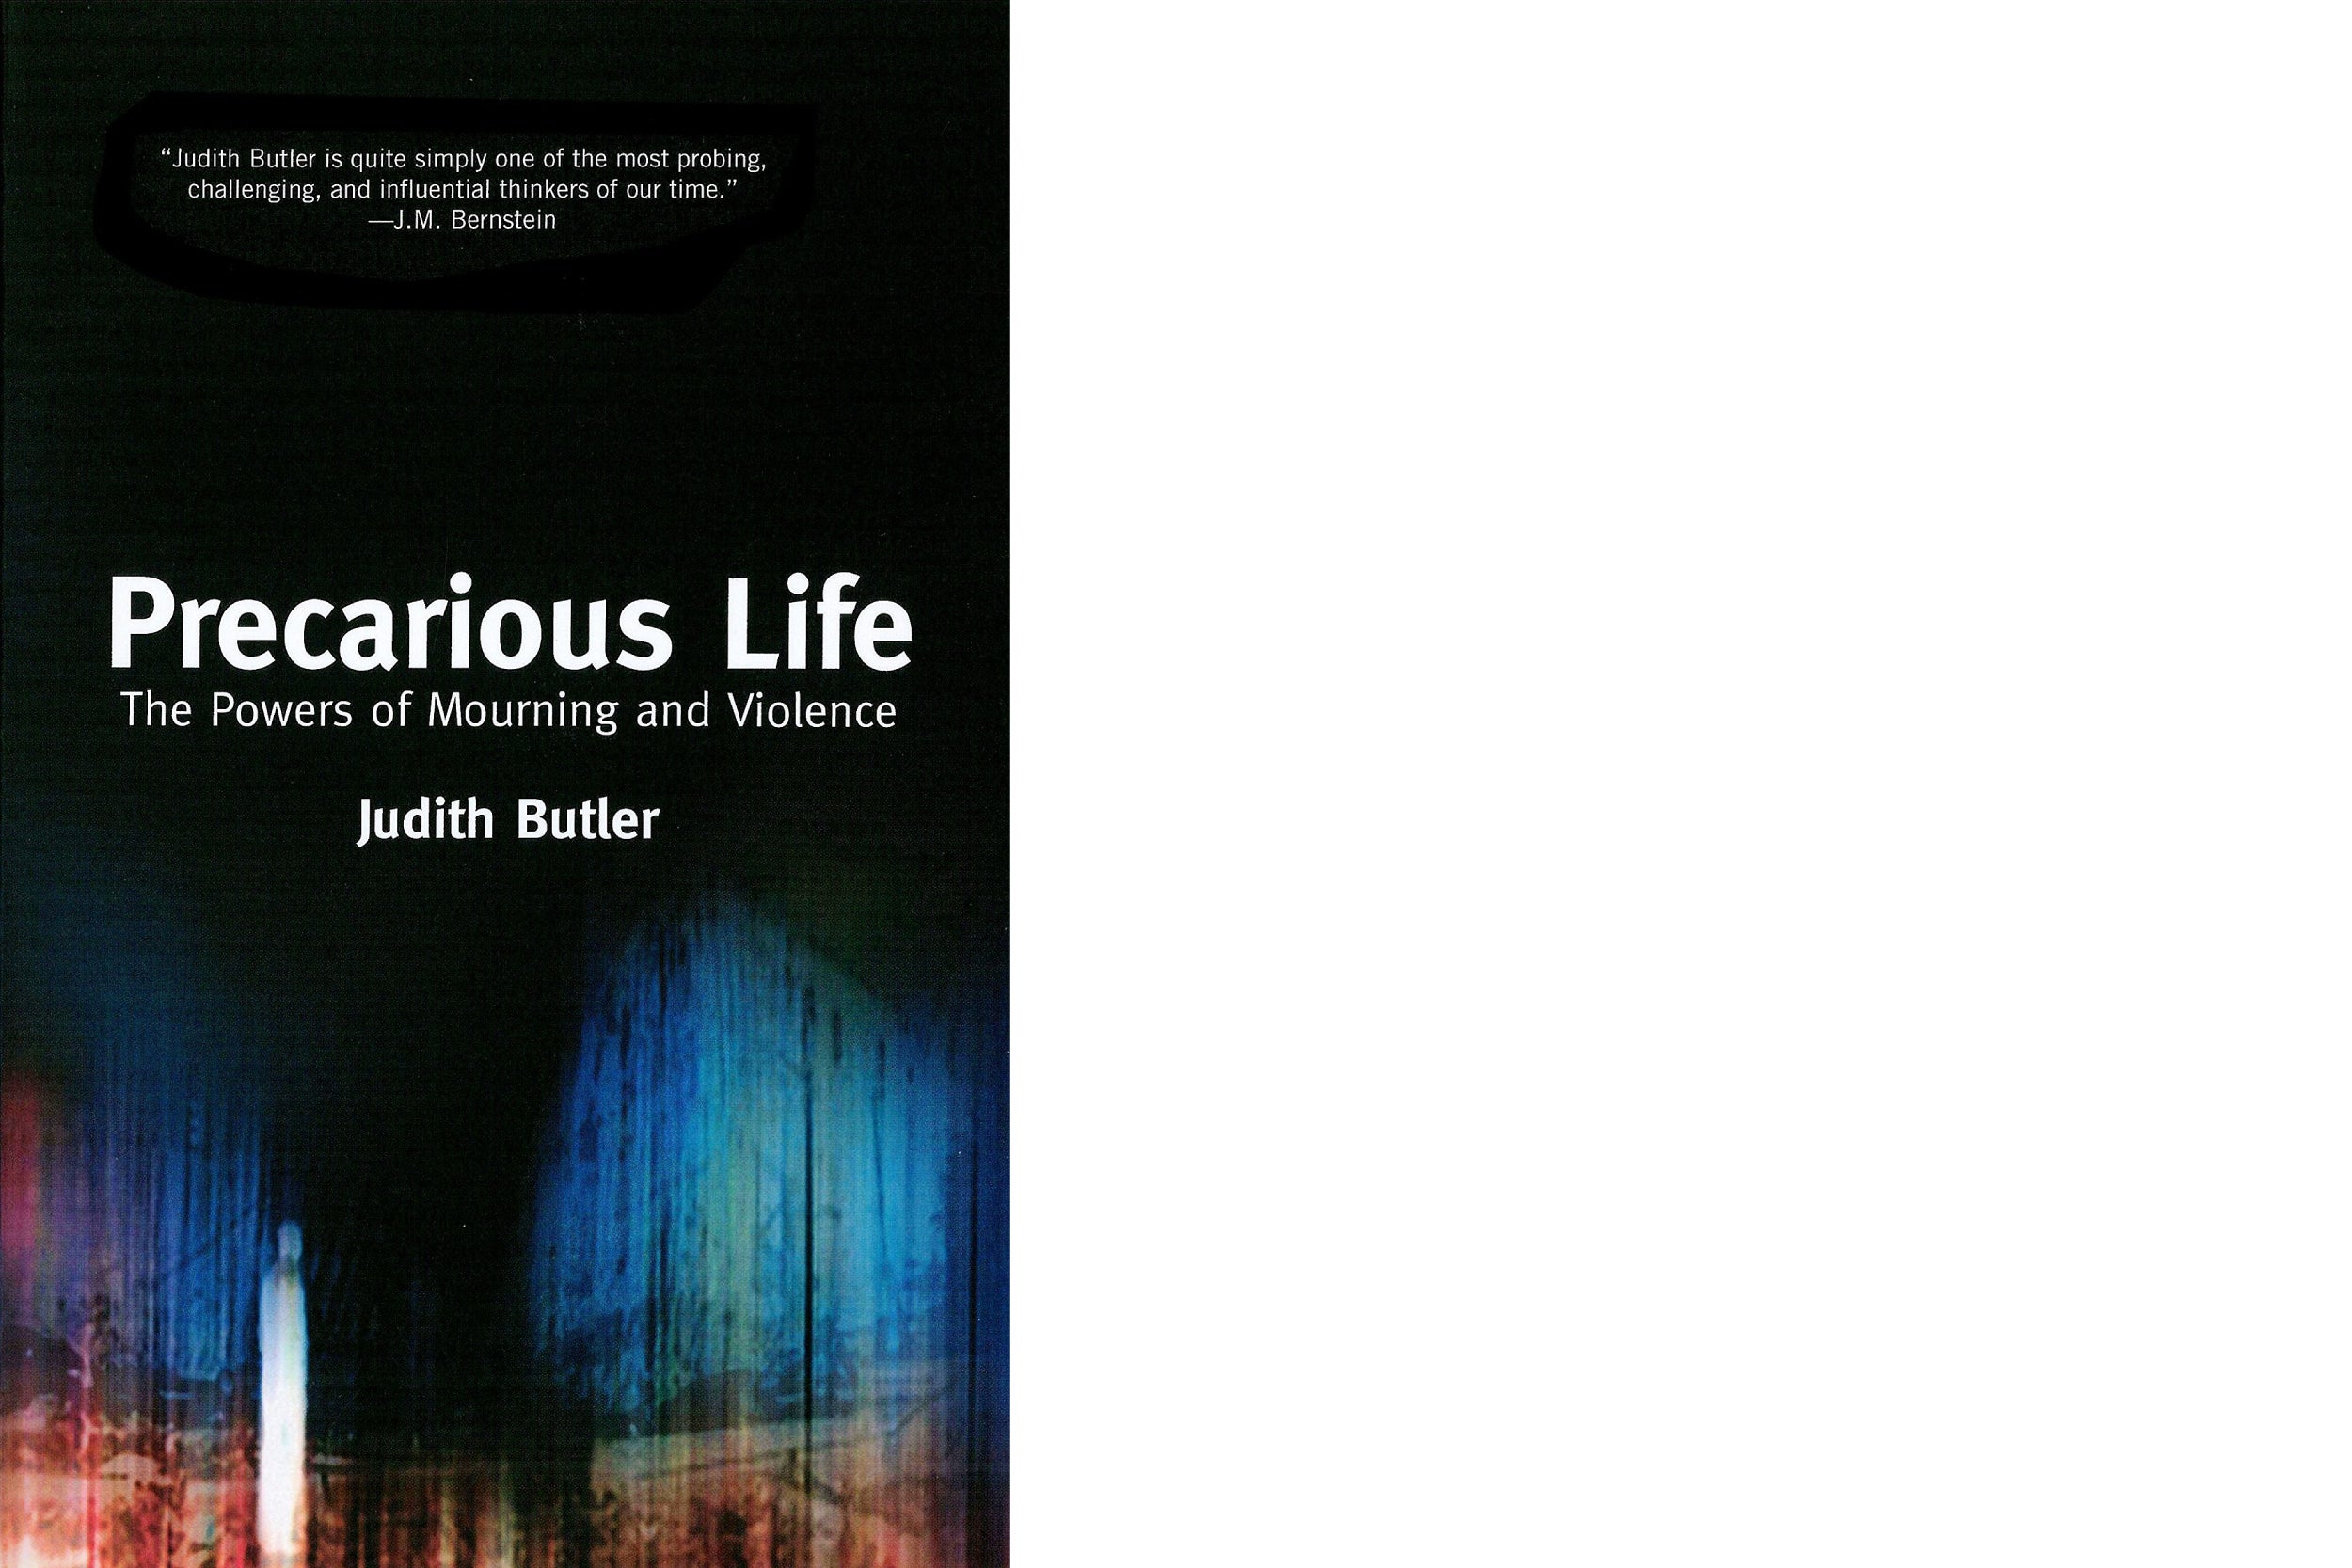 Book cover: “Precarious Life” by Judith Butler.